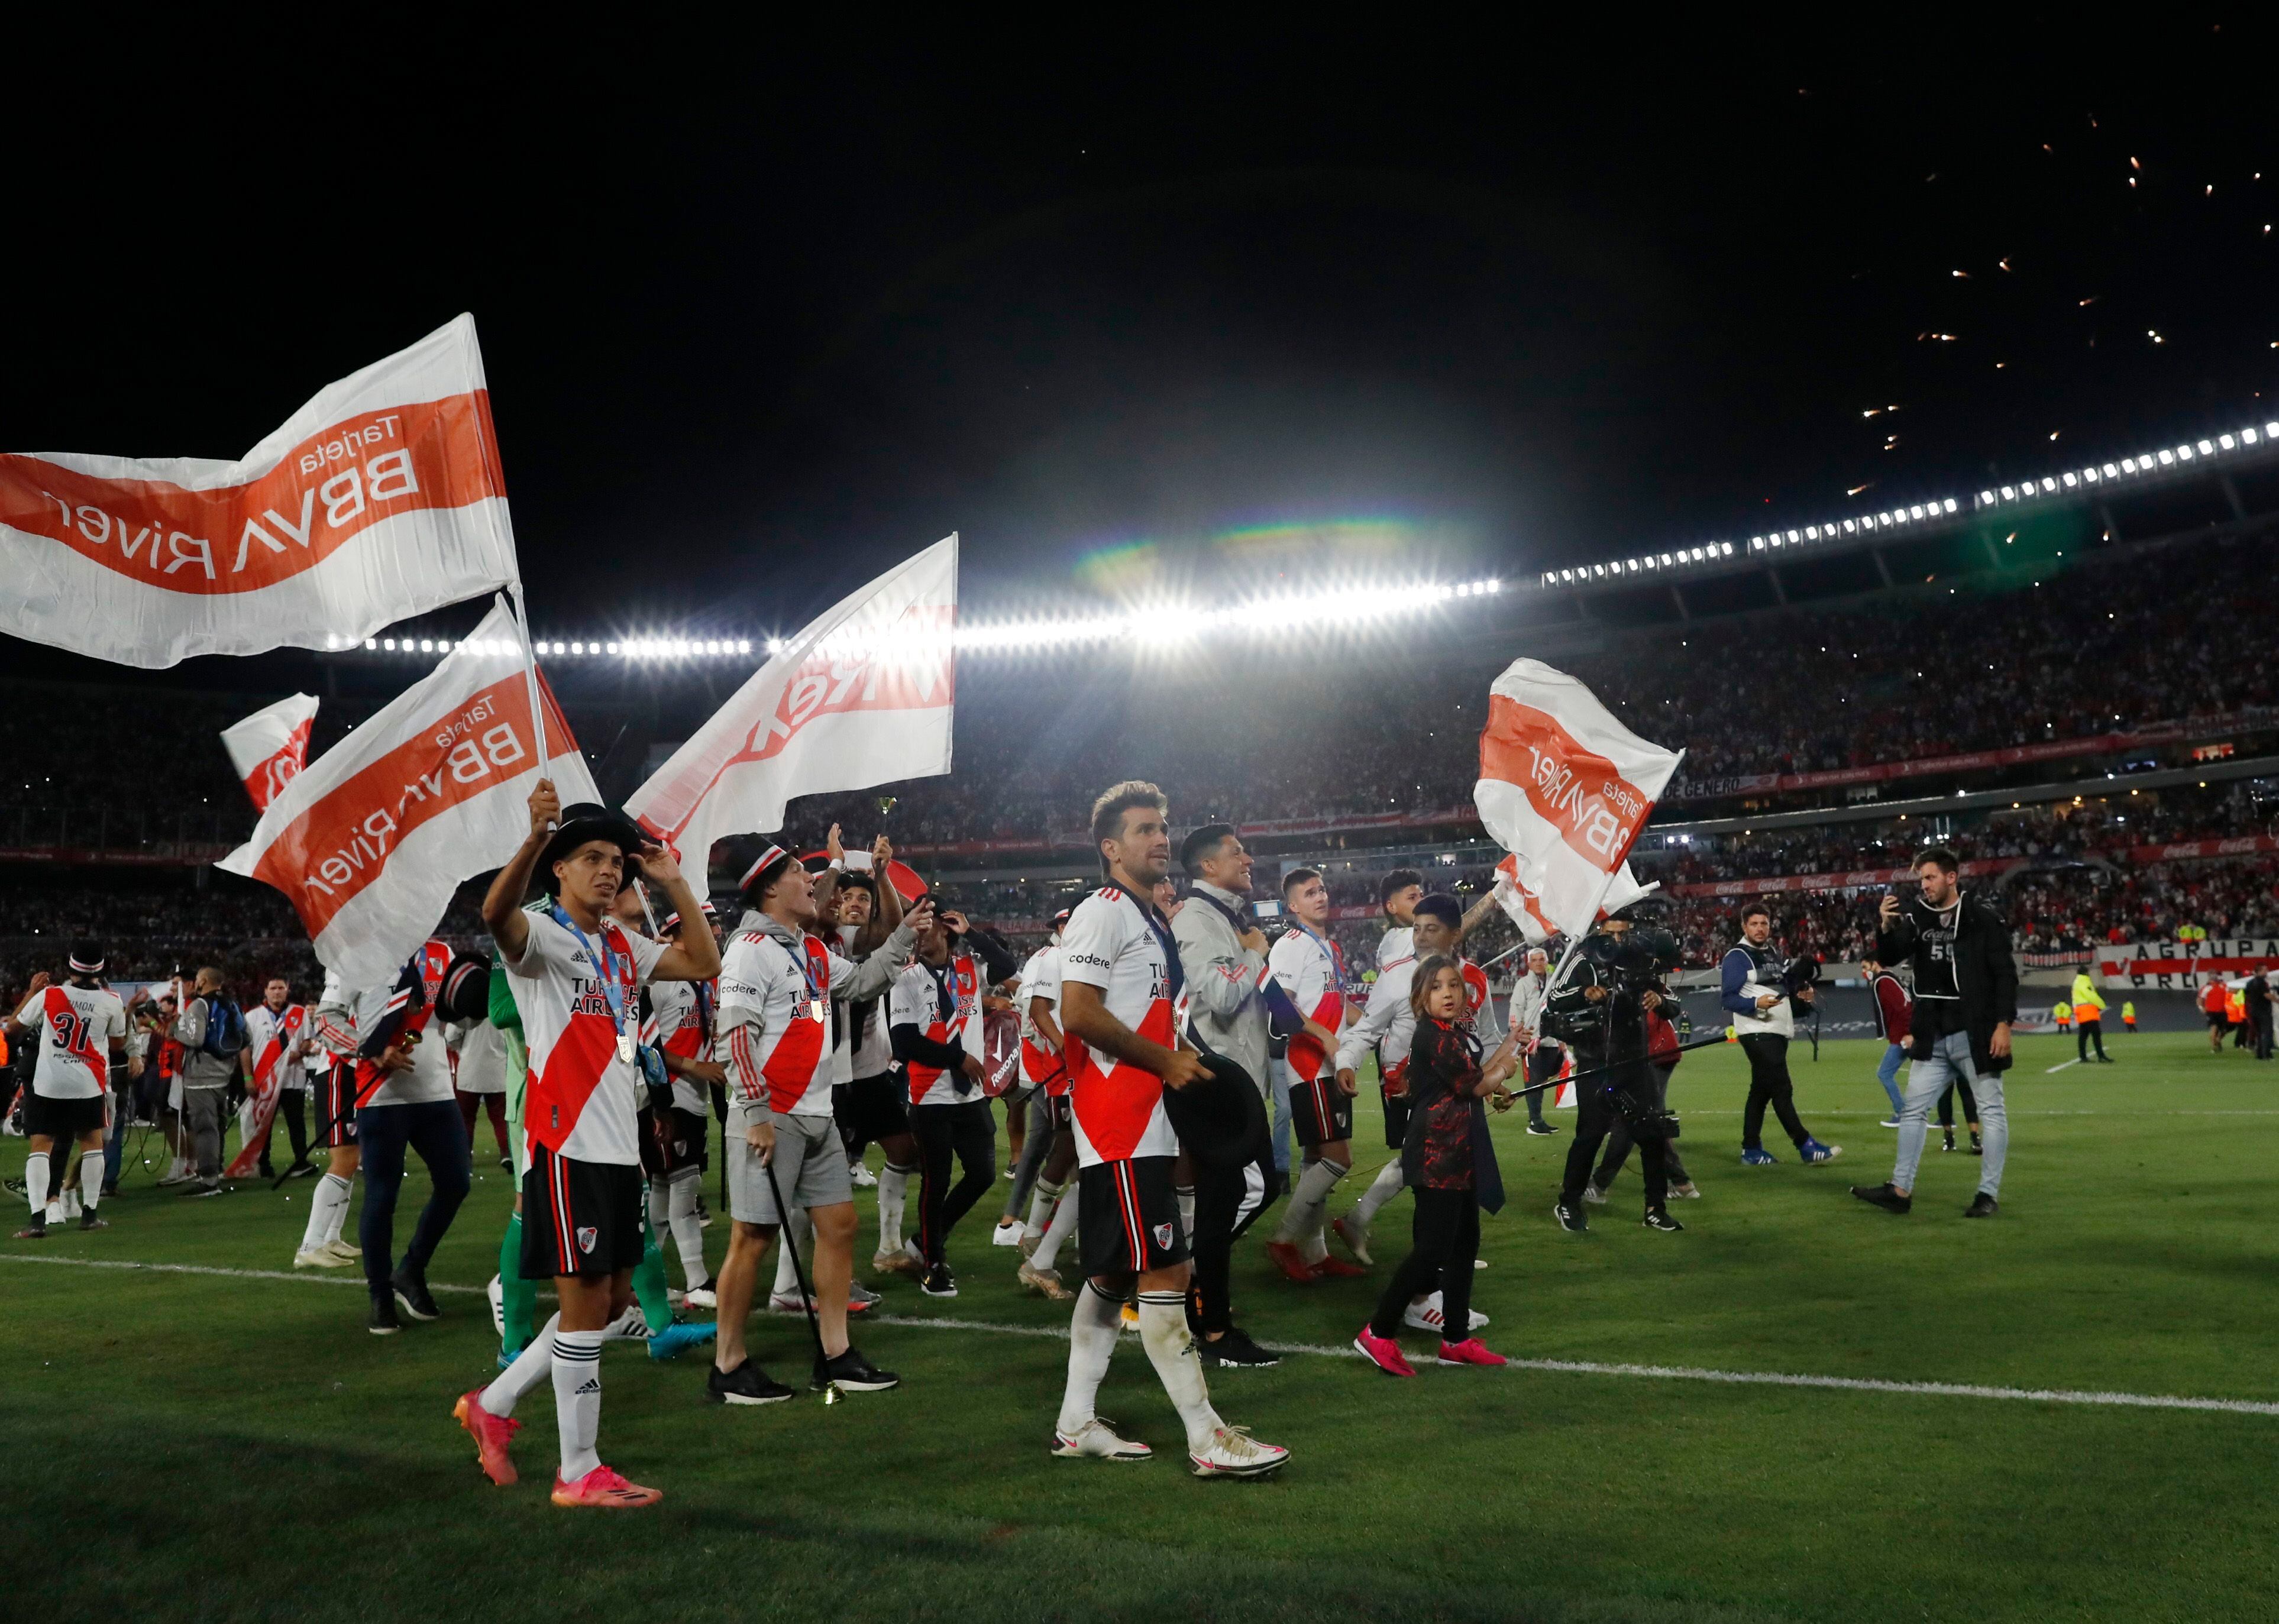 River festeja su coronación sobre el césped de su estadio, que fue uno de los factores que permitieron mejorar parte de la producción del equipo (REUTERS/Agustin Marcarian)